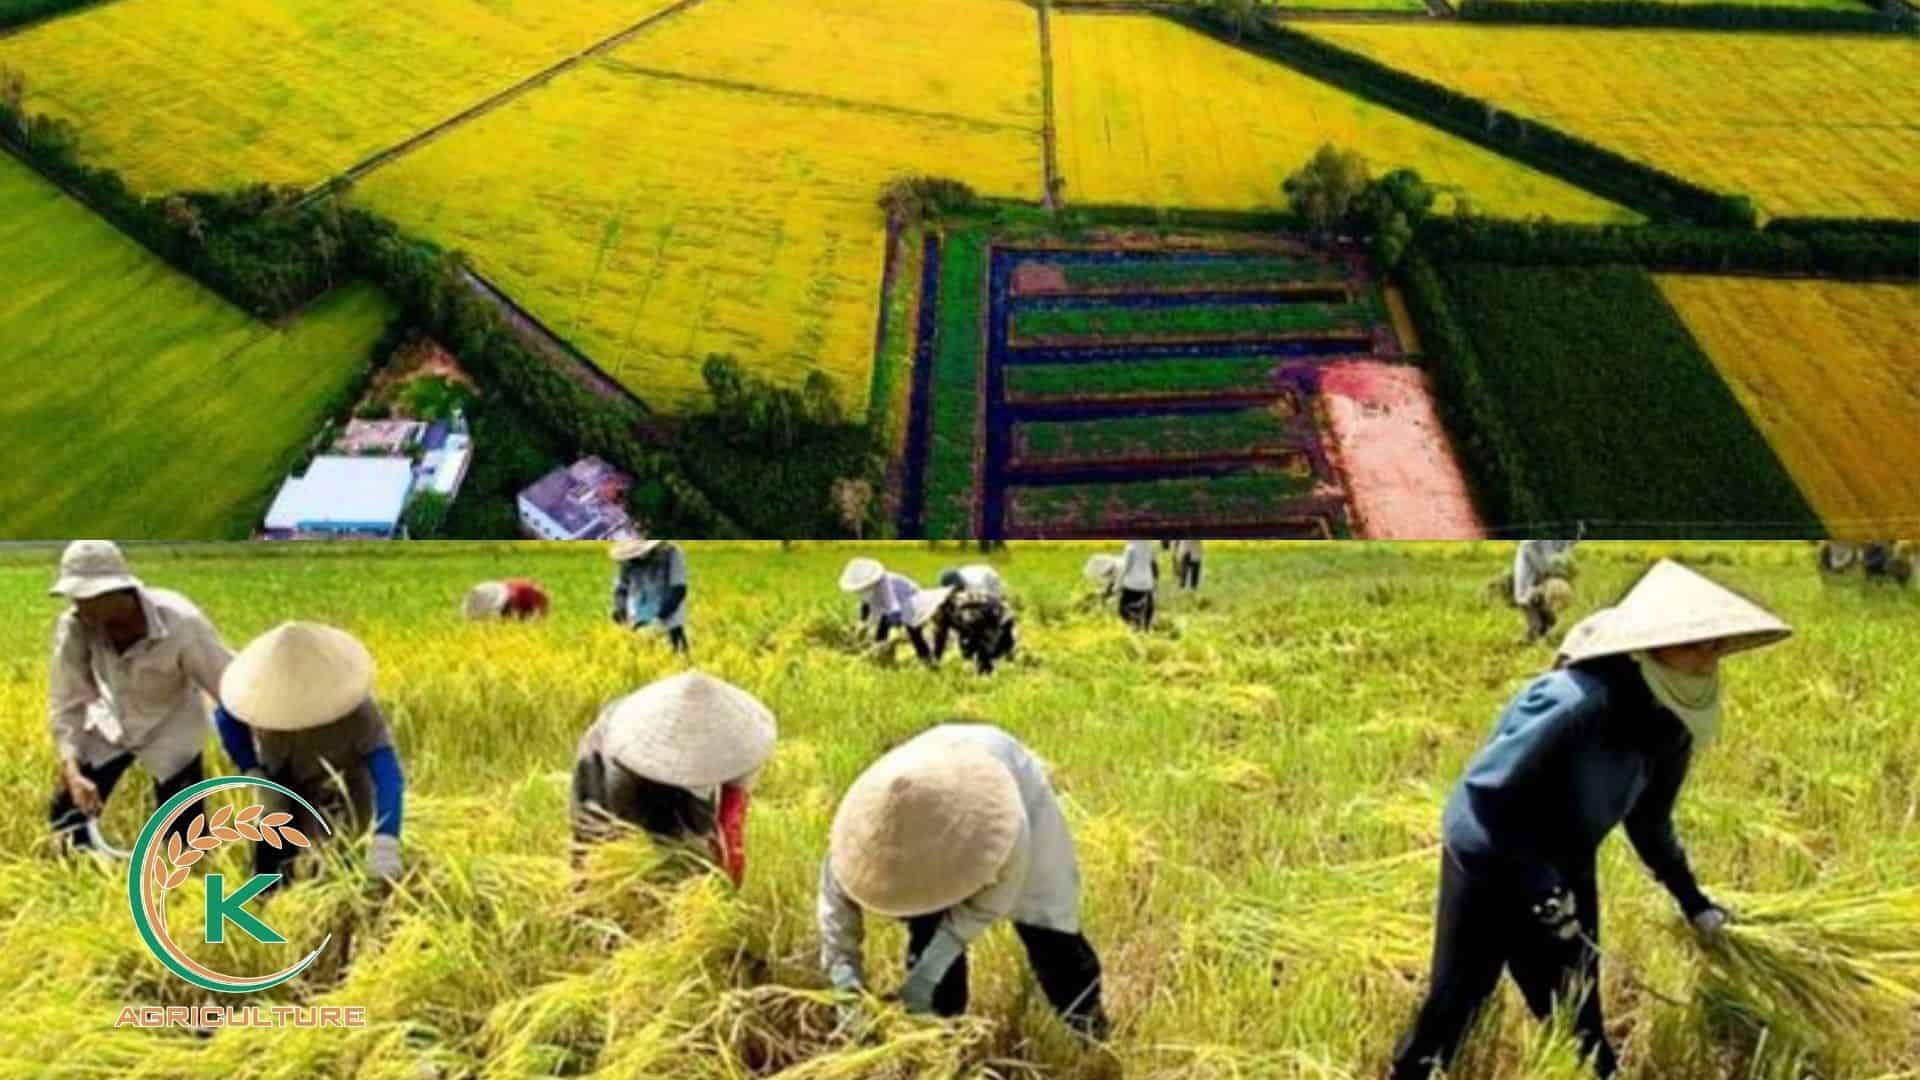 jasmine-rice-manufacturer-in-vietnam-4.jpg